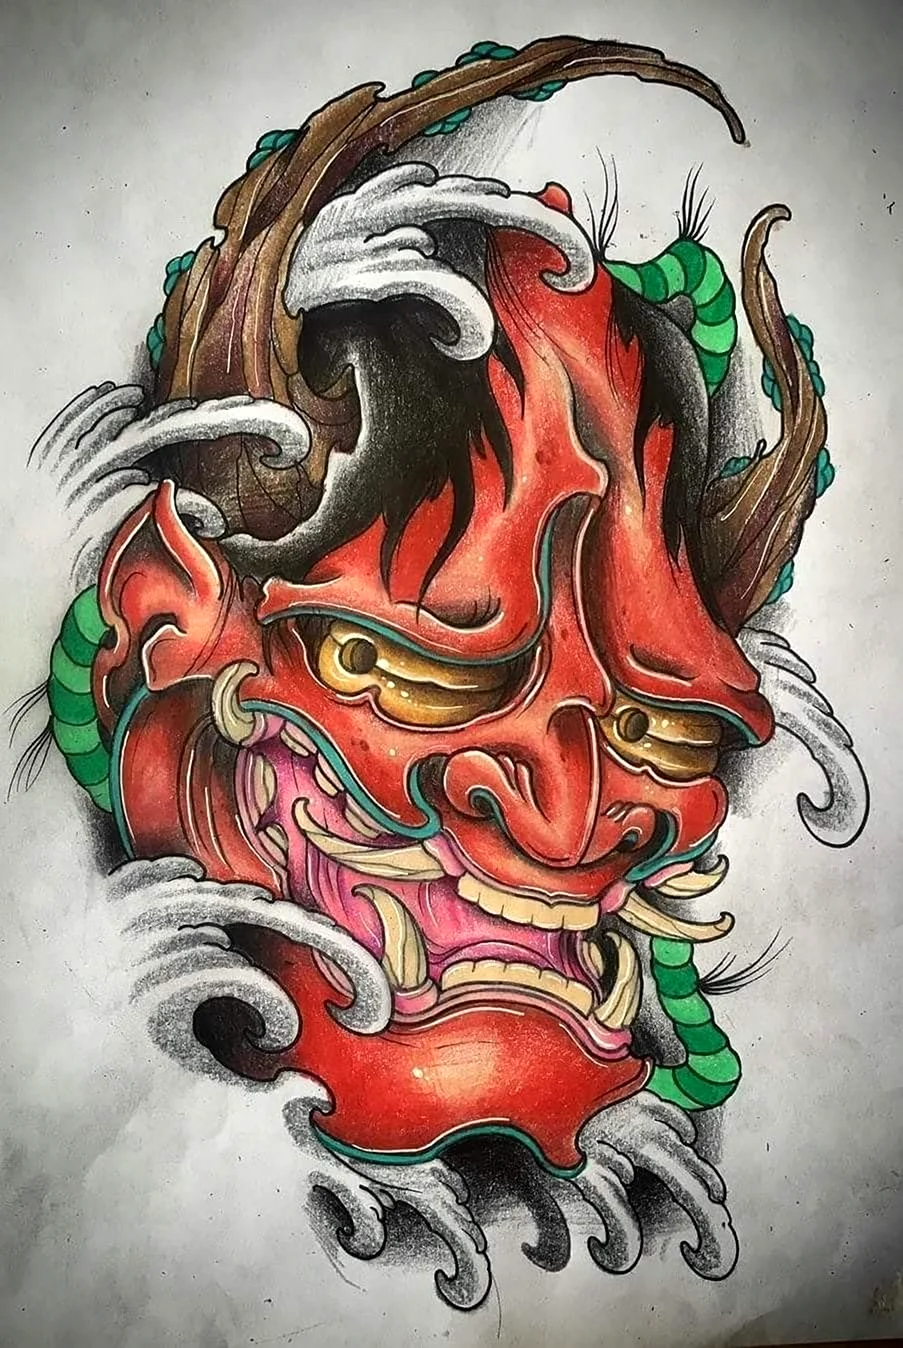 Японская маска демона Ханья